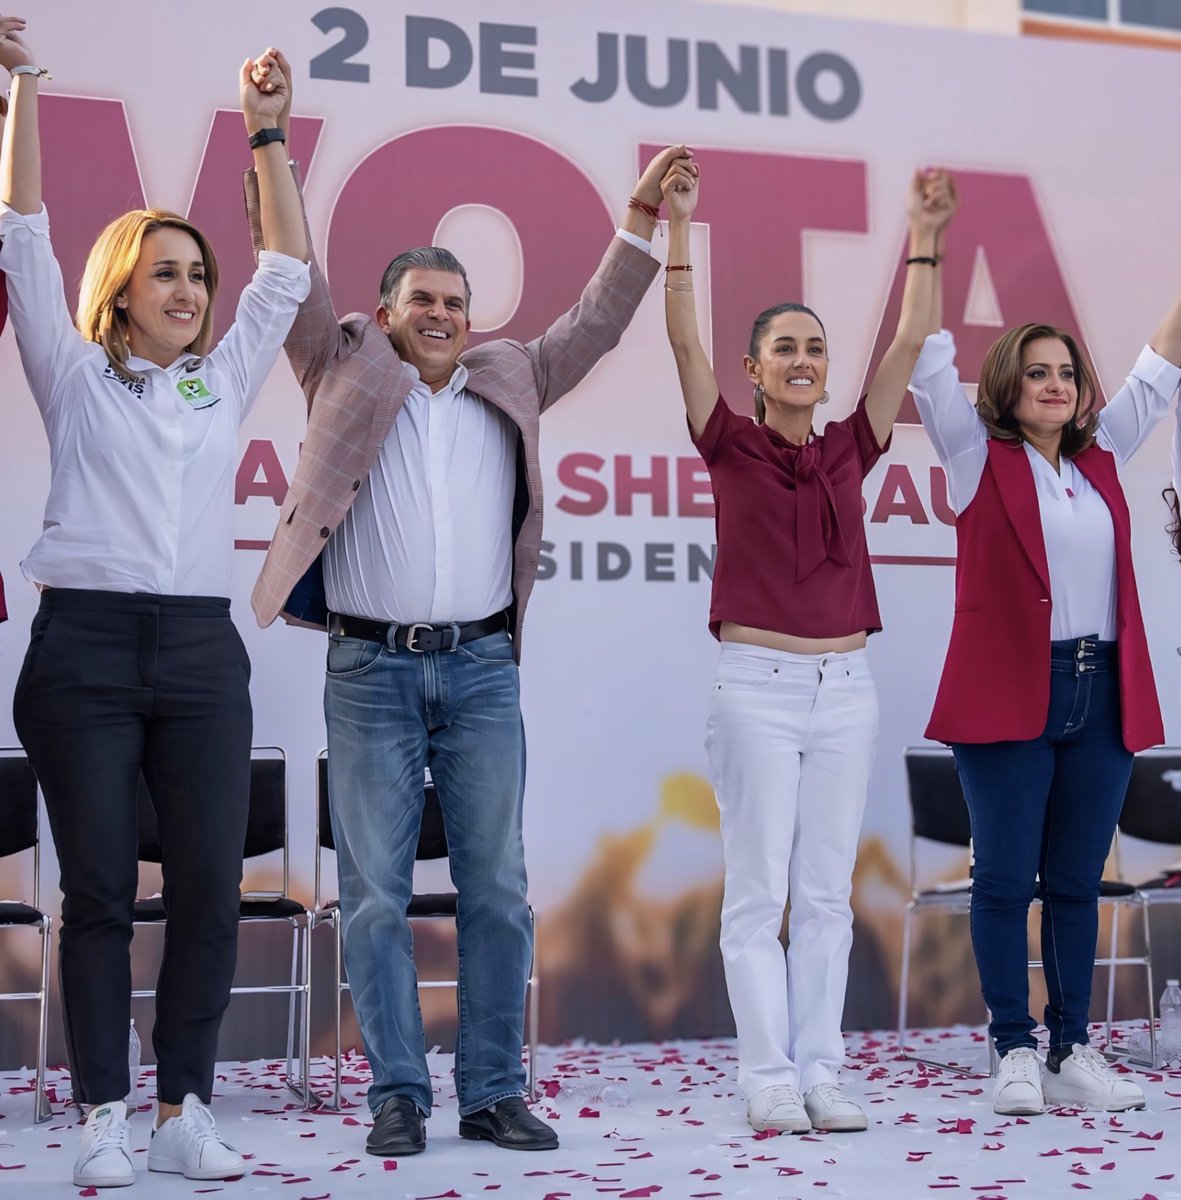 De la mano del liderazgo de la Dra. @Claudiashein la Cuarta Transformación llegará muy pronto a #Guanajuato. ¡Este 02 de junio recuerda votar 6 de 6 por MORENA! #ClaudiaPresidenta